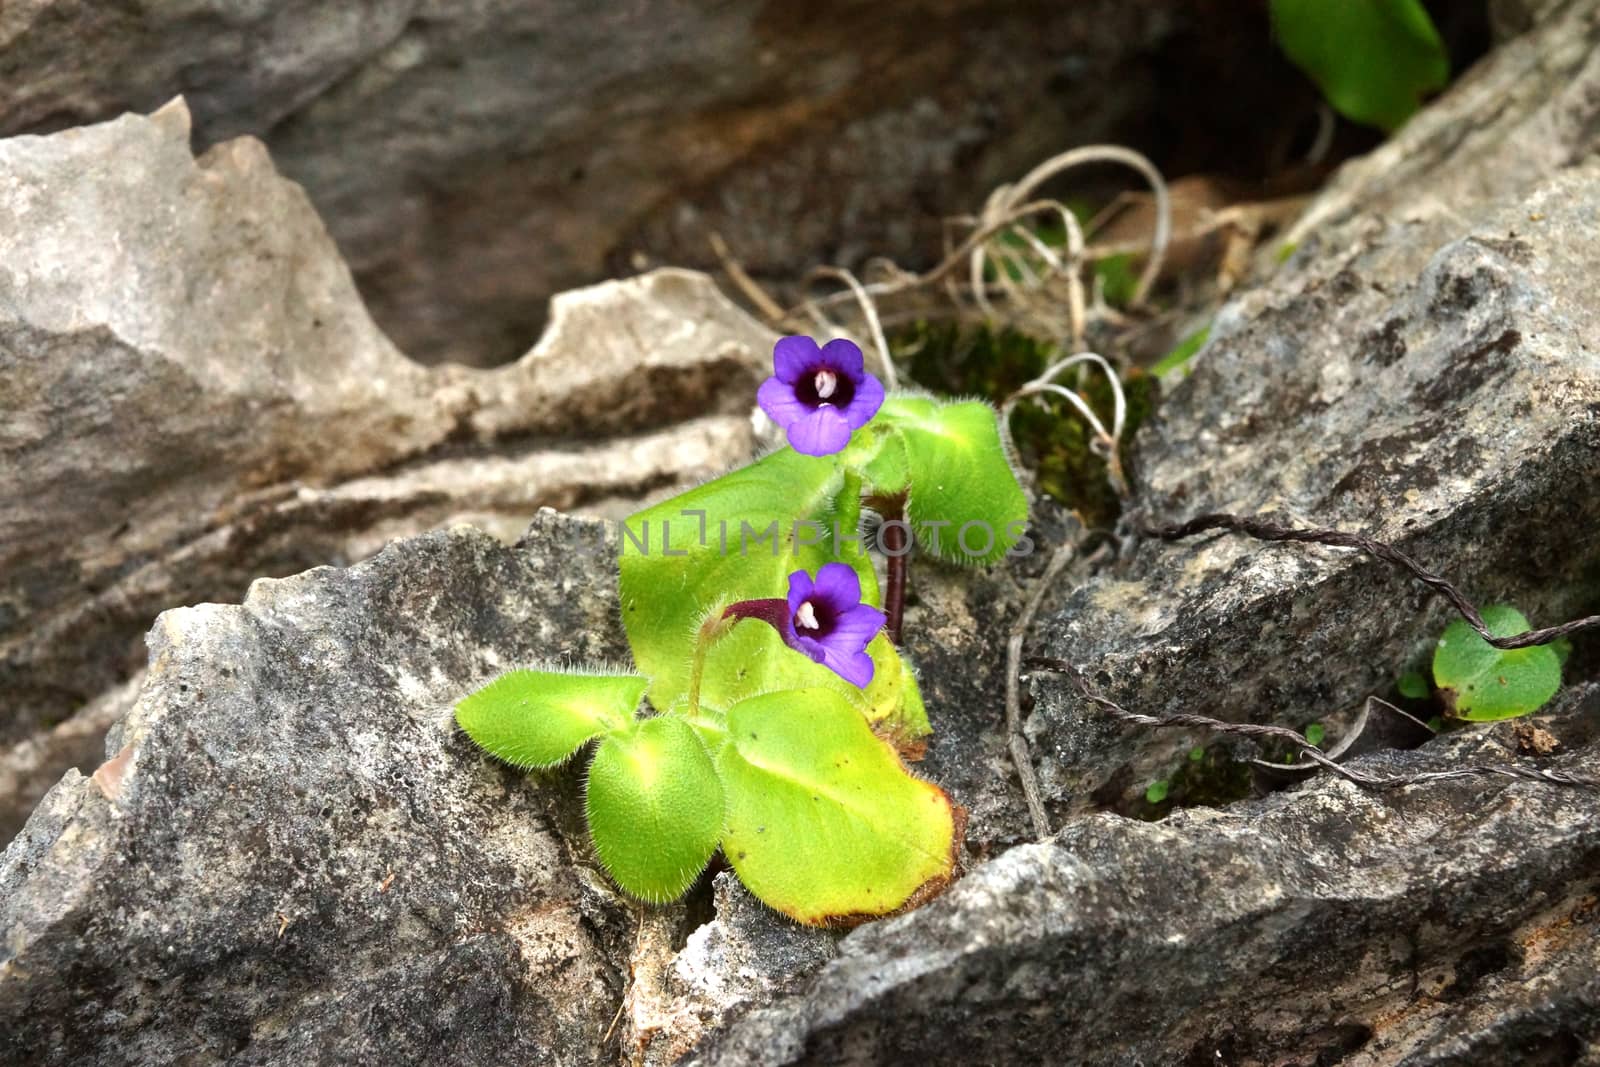 Purple flowers on the rocks